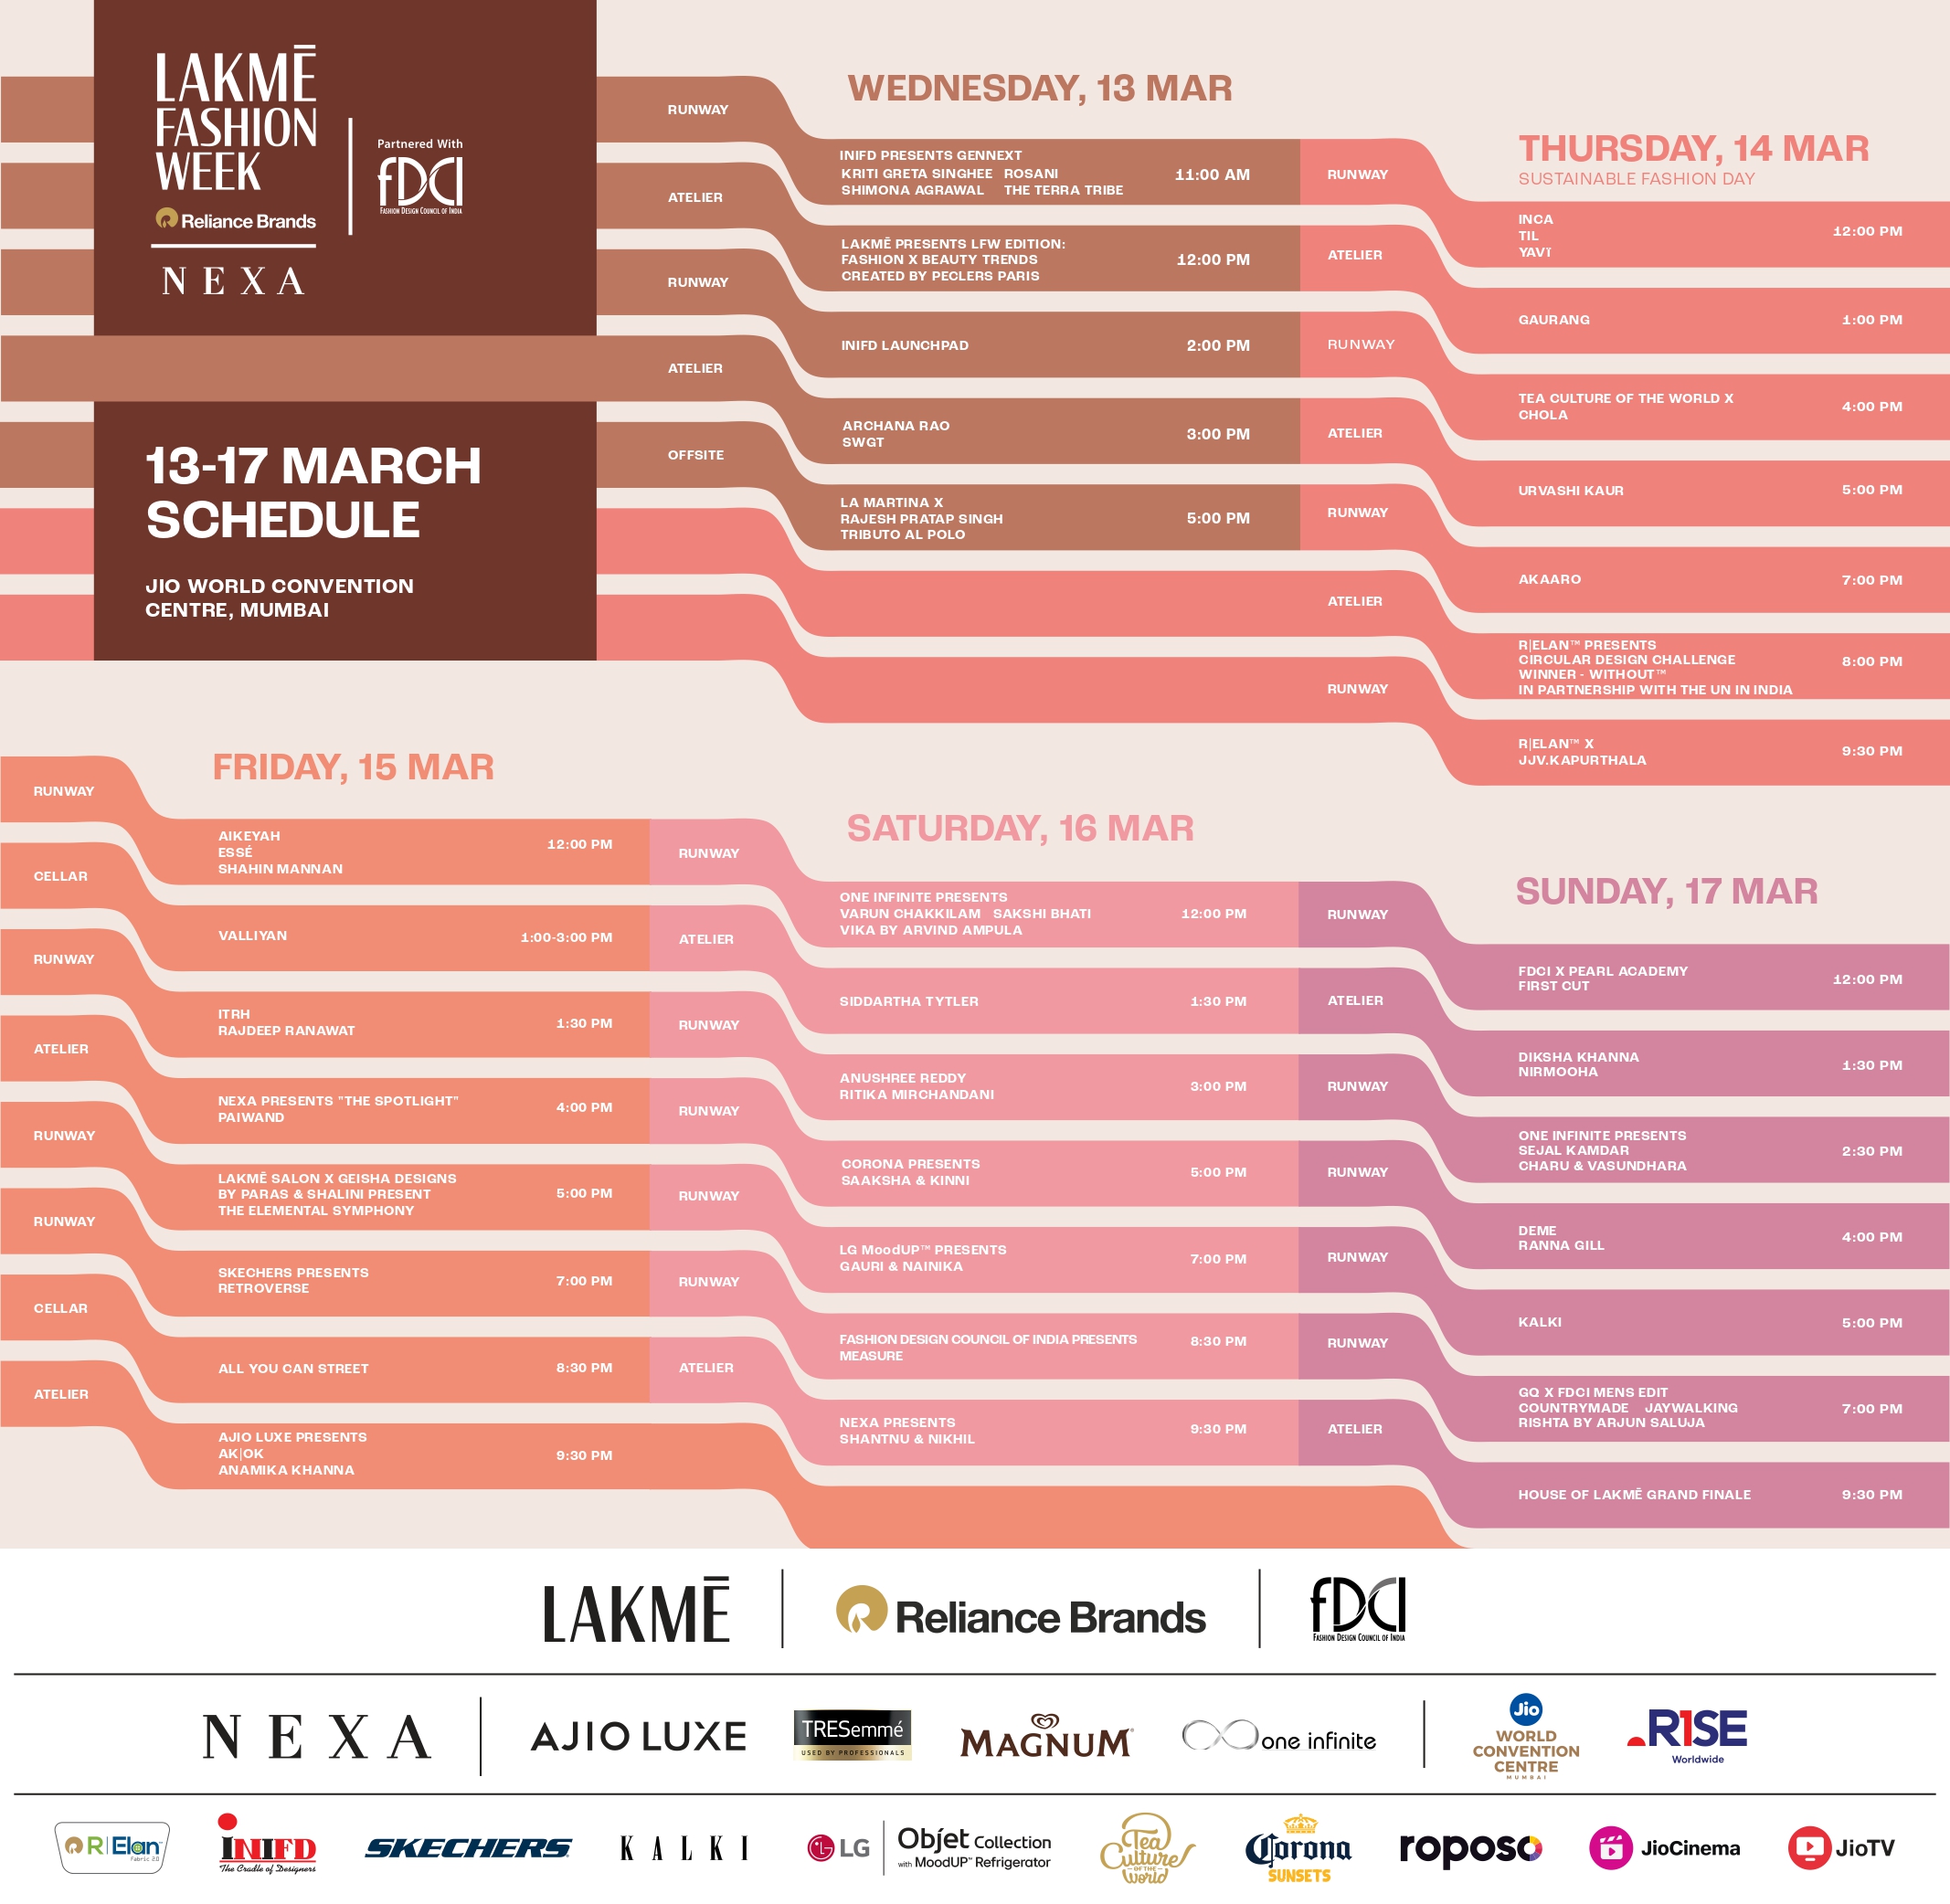 49th Lakmē Fashion Week x FDCI schedule